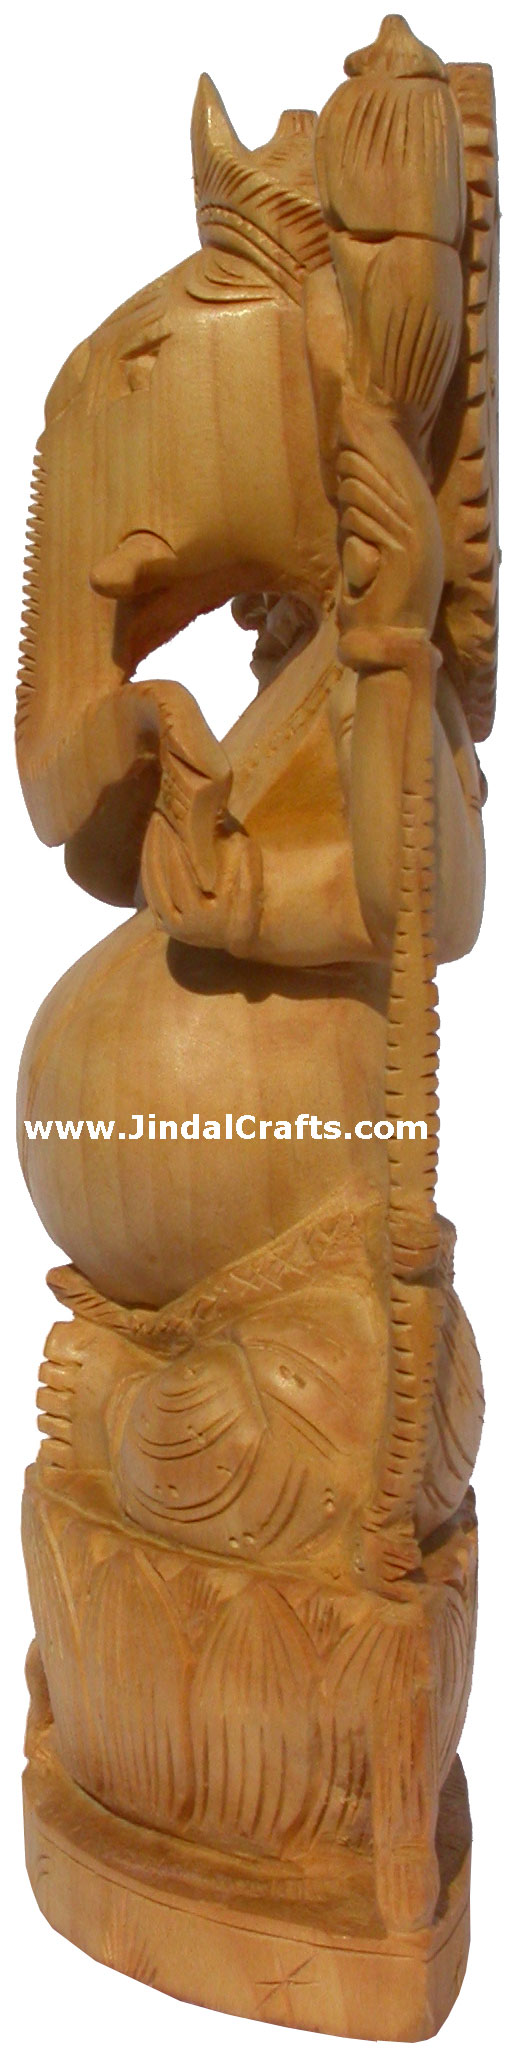 Wooden Hand Carved Ganesha Figurine Vinayak Hindu India Lord Ganpati Murti Craft